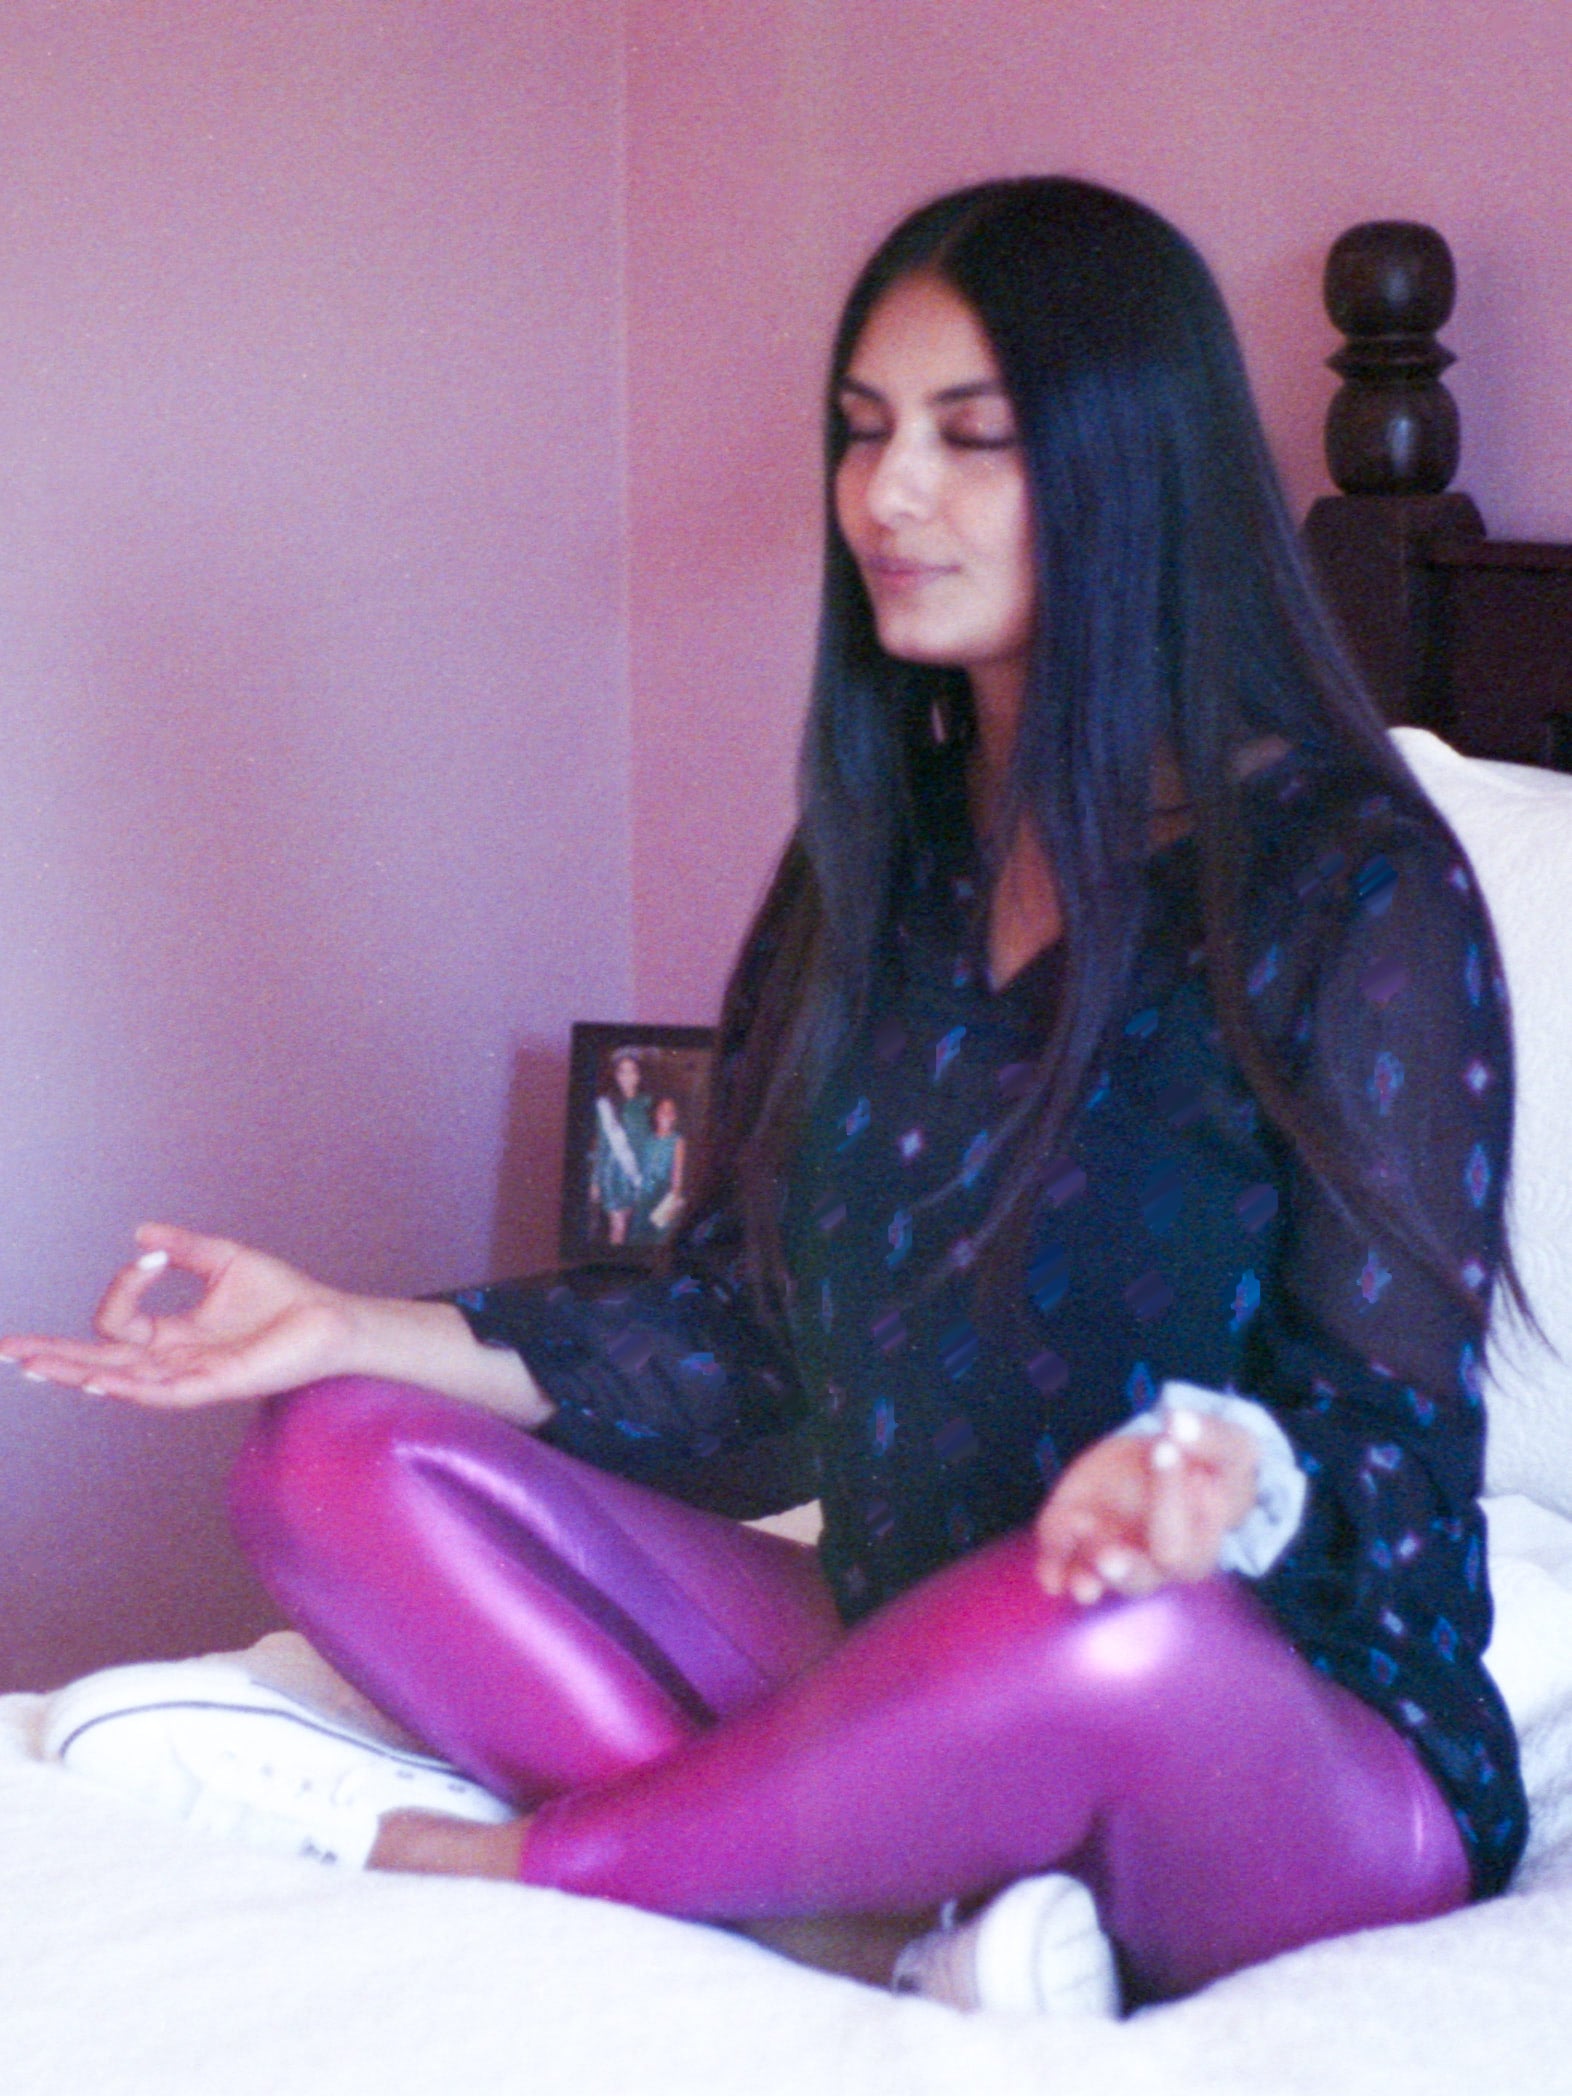 Brenda Sarai Zuniga sitting on her bed, meditating